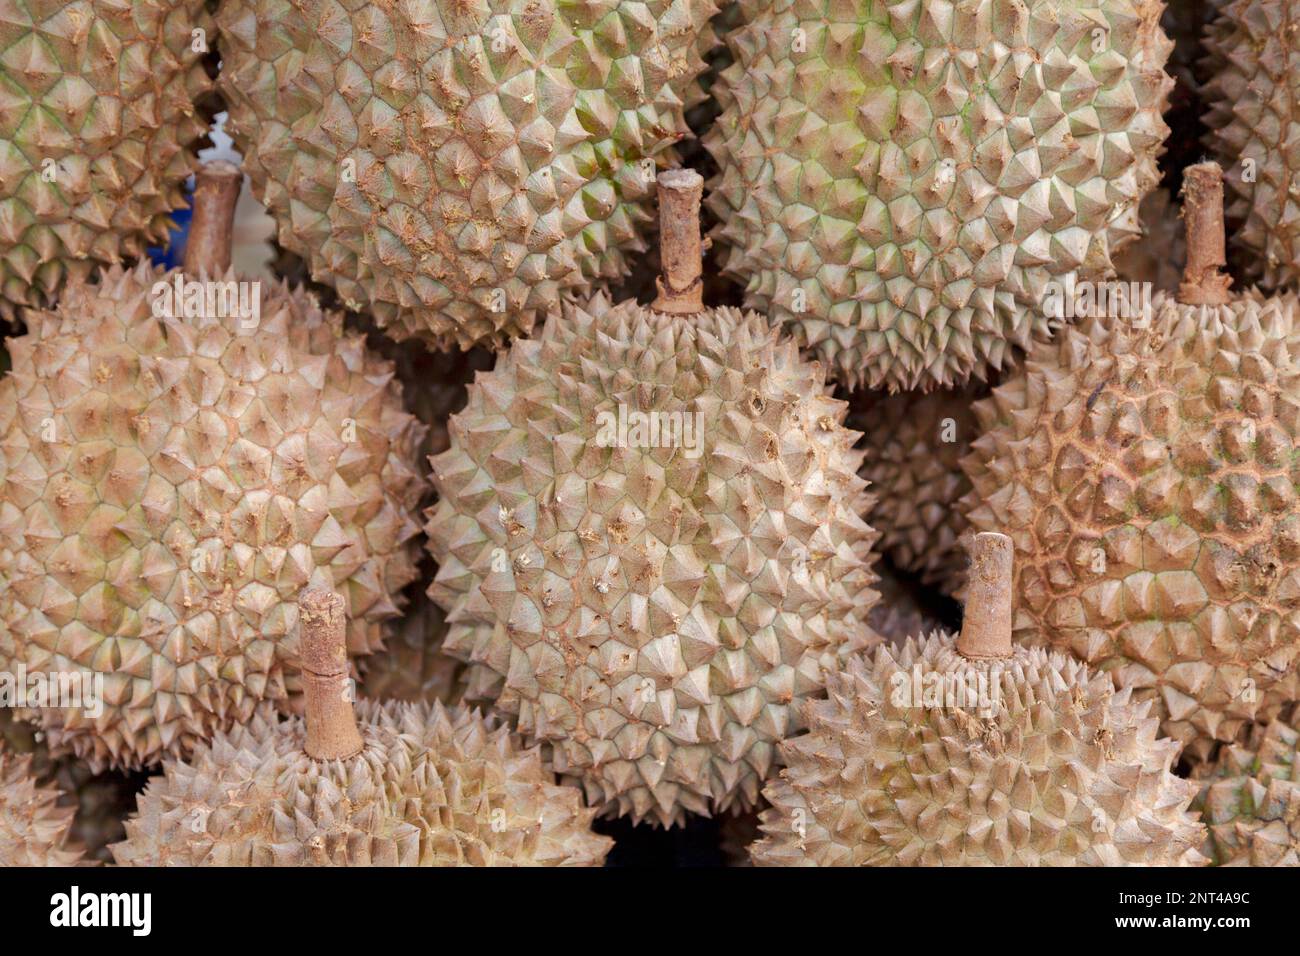 Nahaufnahme eines Haufens von Durianfruchten zum Verkauf an einem Marktstand. Stockfoto